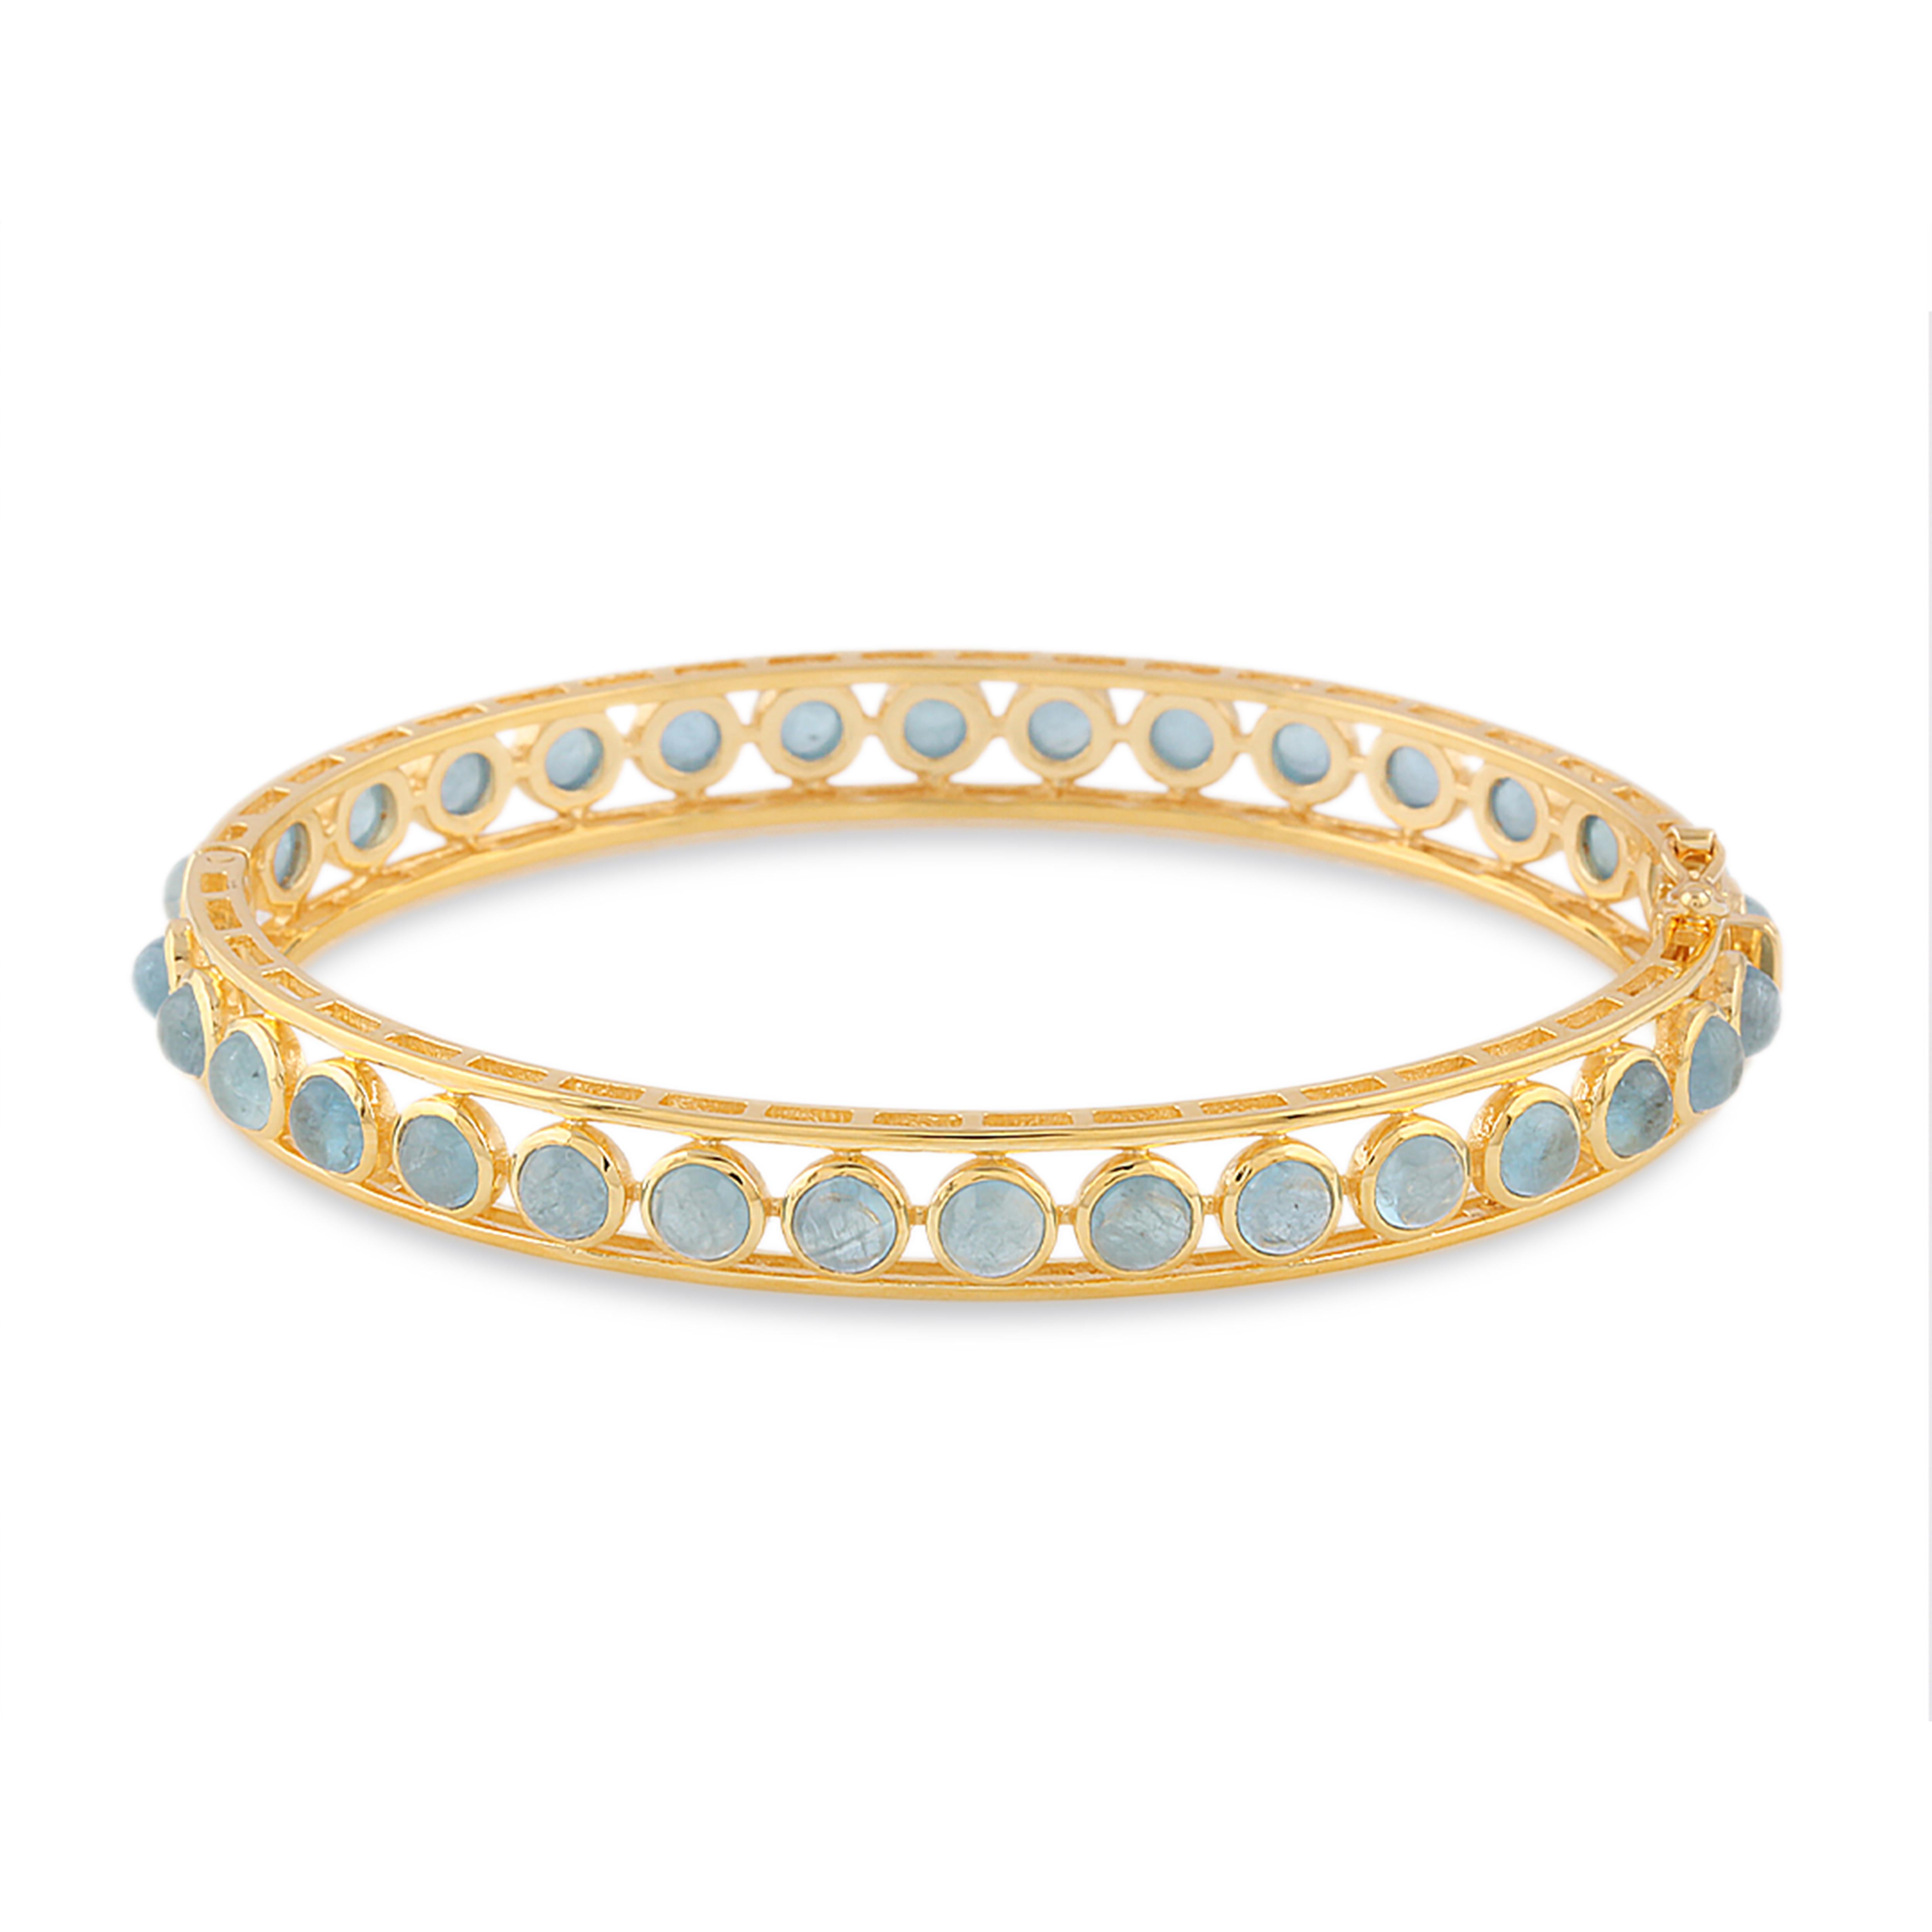 Le bracelet Tresor Aquamarine présente une aigue-marine de 7,00 cts en or jaune 18 carats. Les bracelets sont une ode à la beauté luxueuse et classique avec des diamants étincelants. Leur design contemporain et moderne leur confère une grande